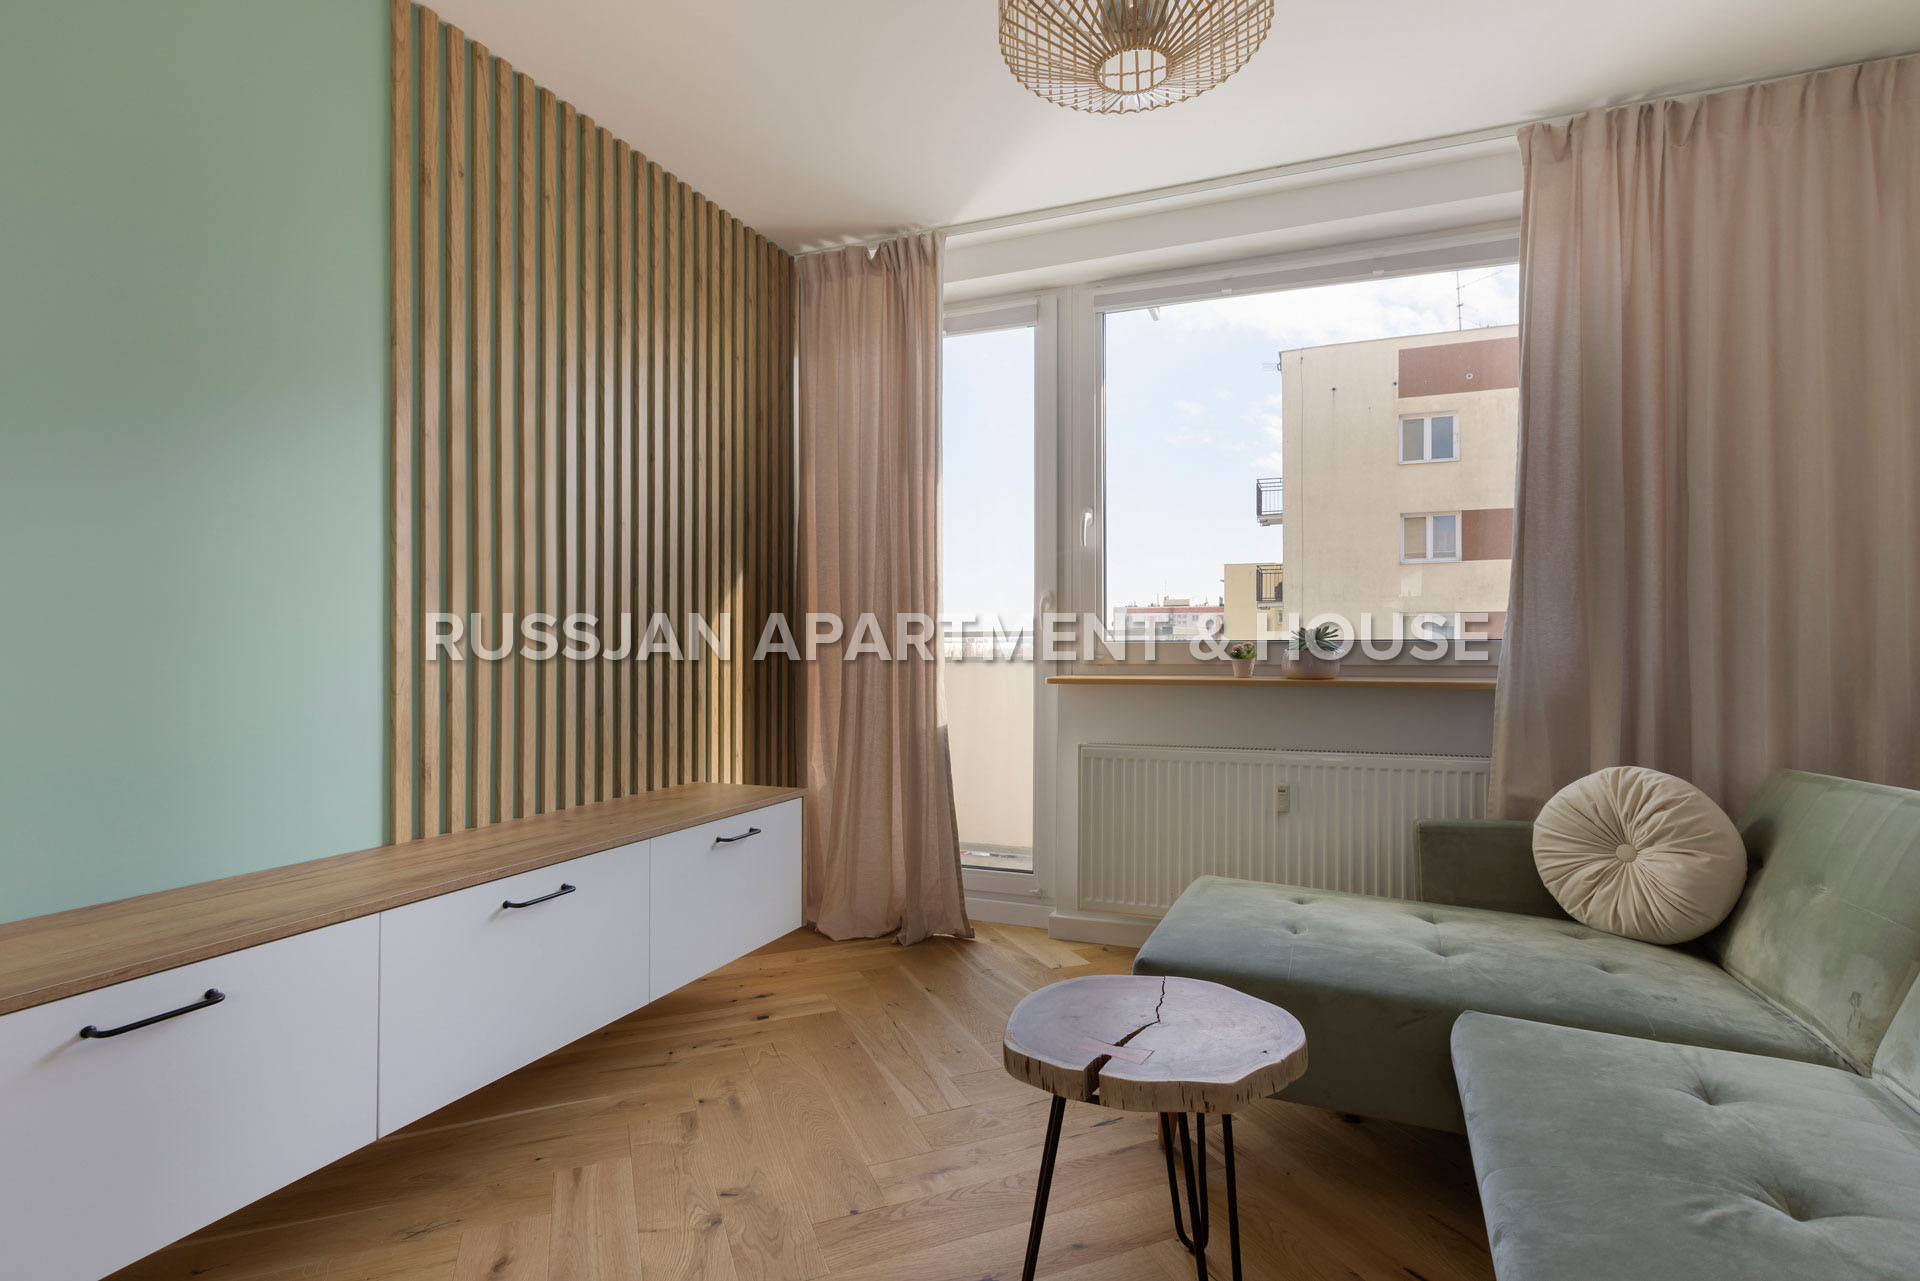 MIESZKANIE SOPOT Ulica Niepodległości | RUSSJAN Apartment & House